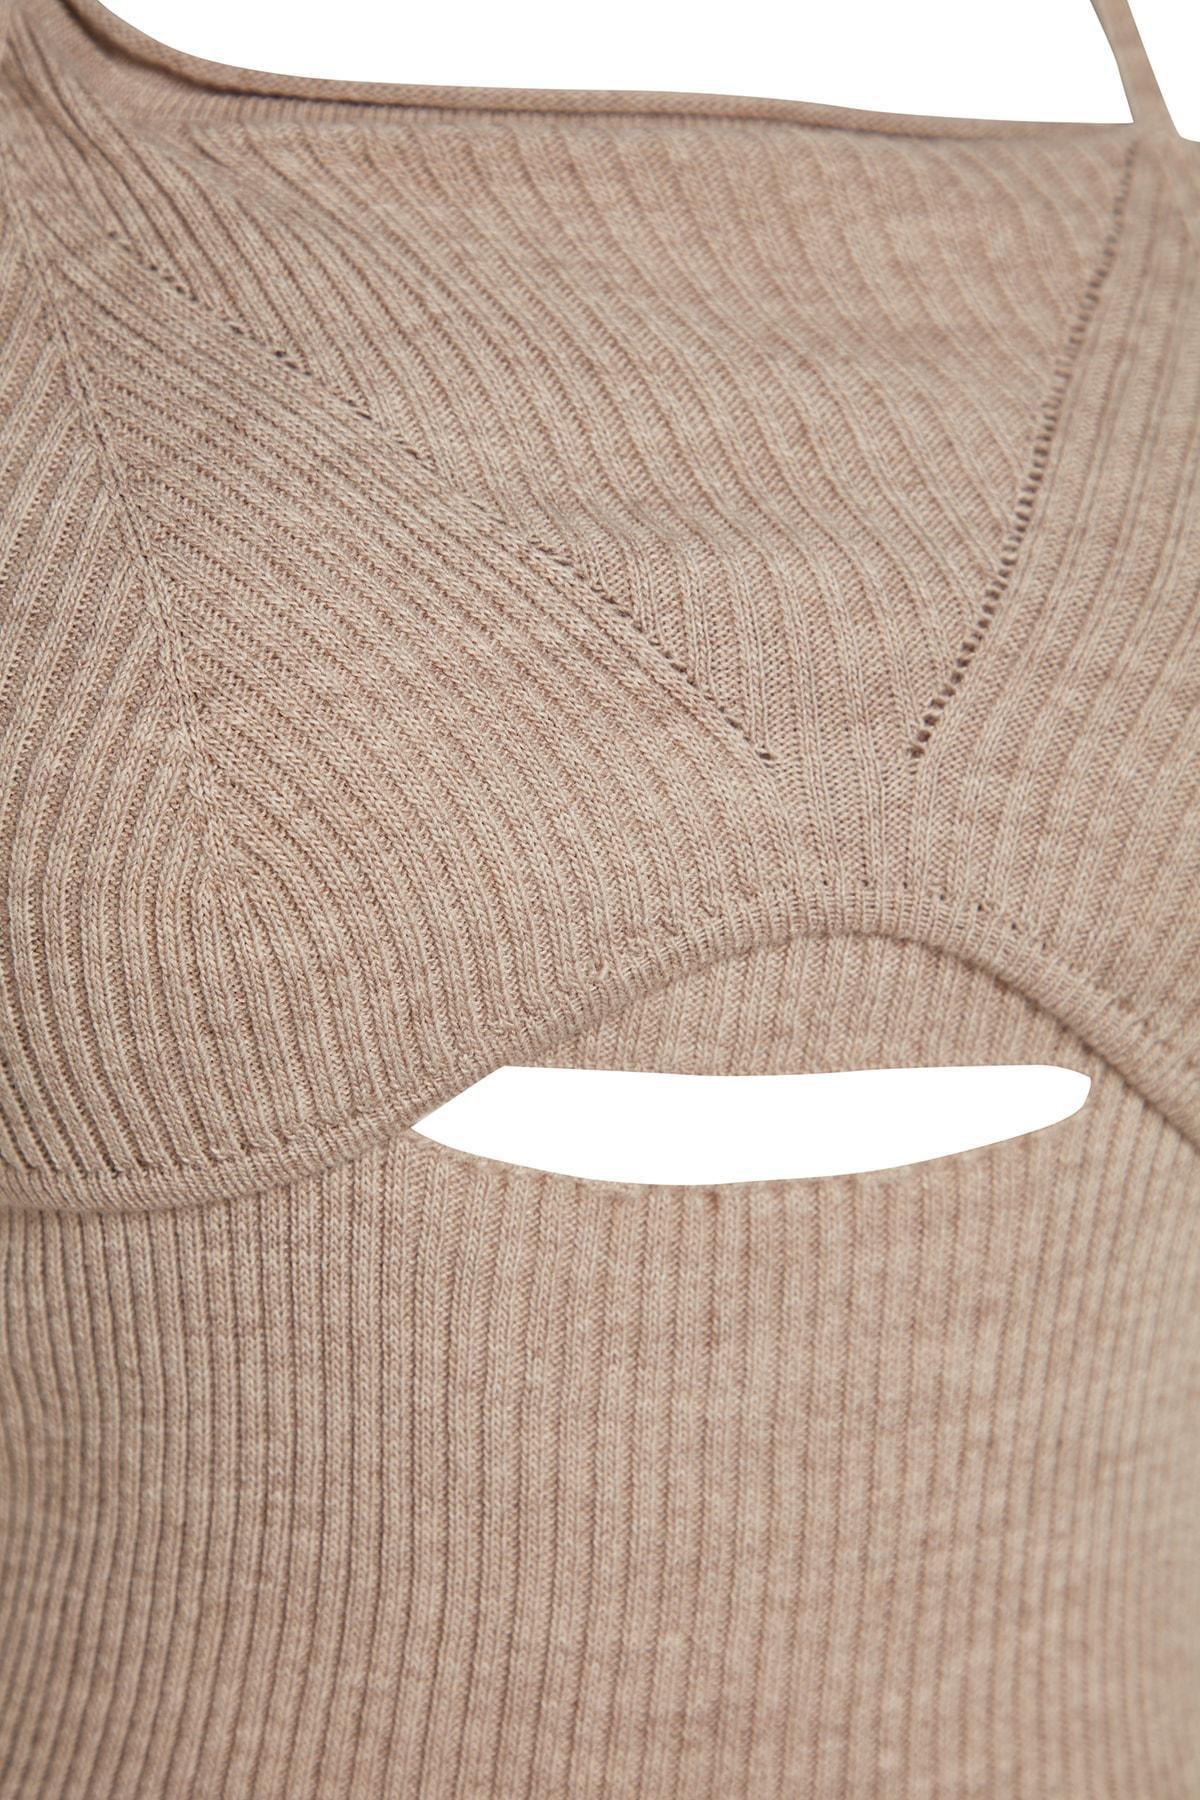 Trendyol - Grey Cut Out Knitwear Sweater